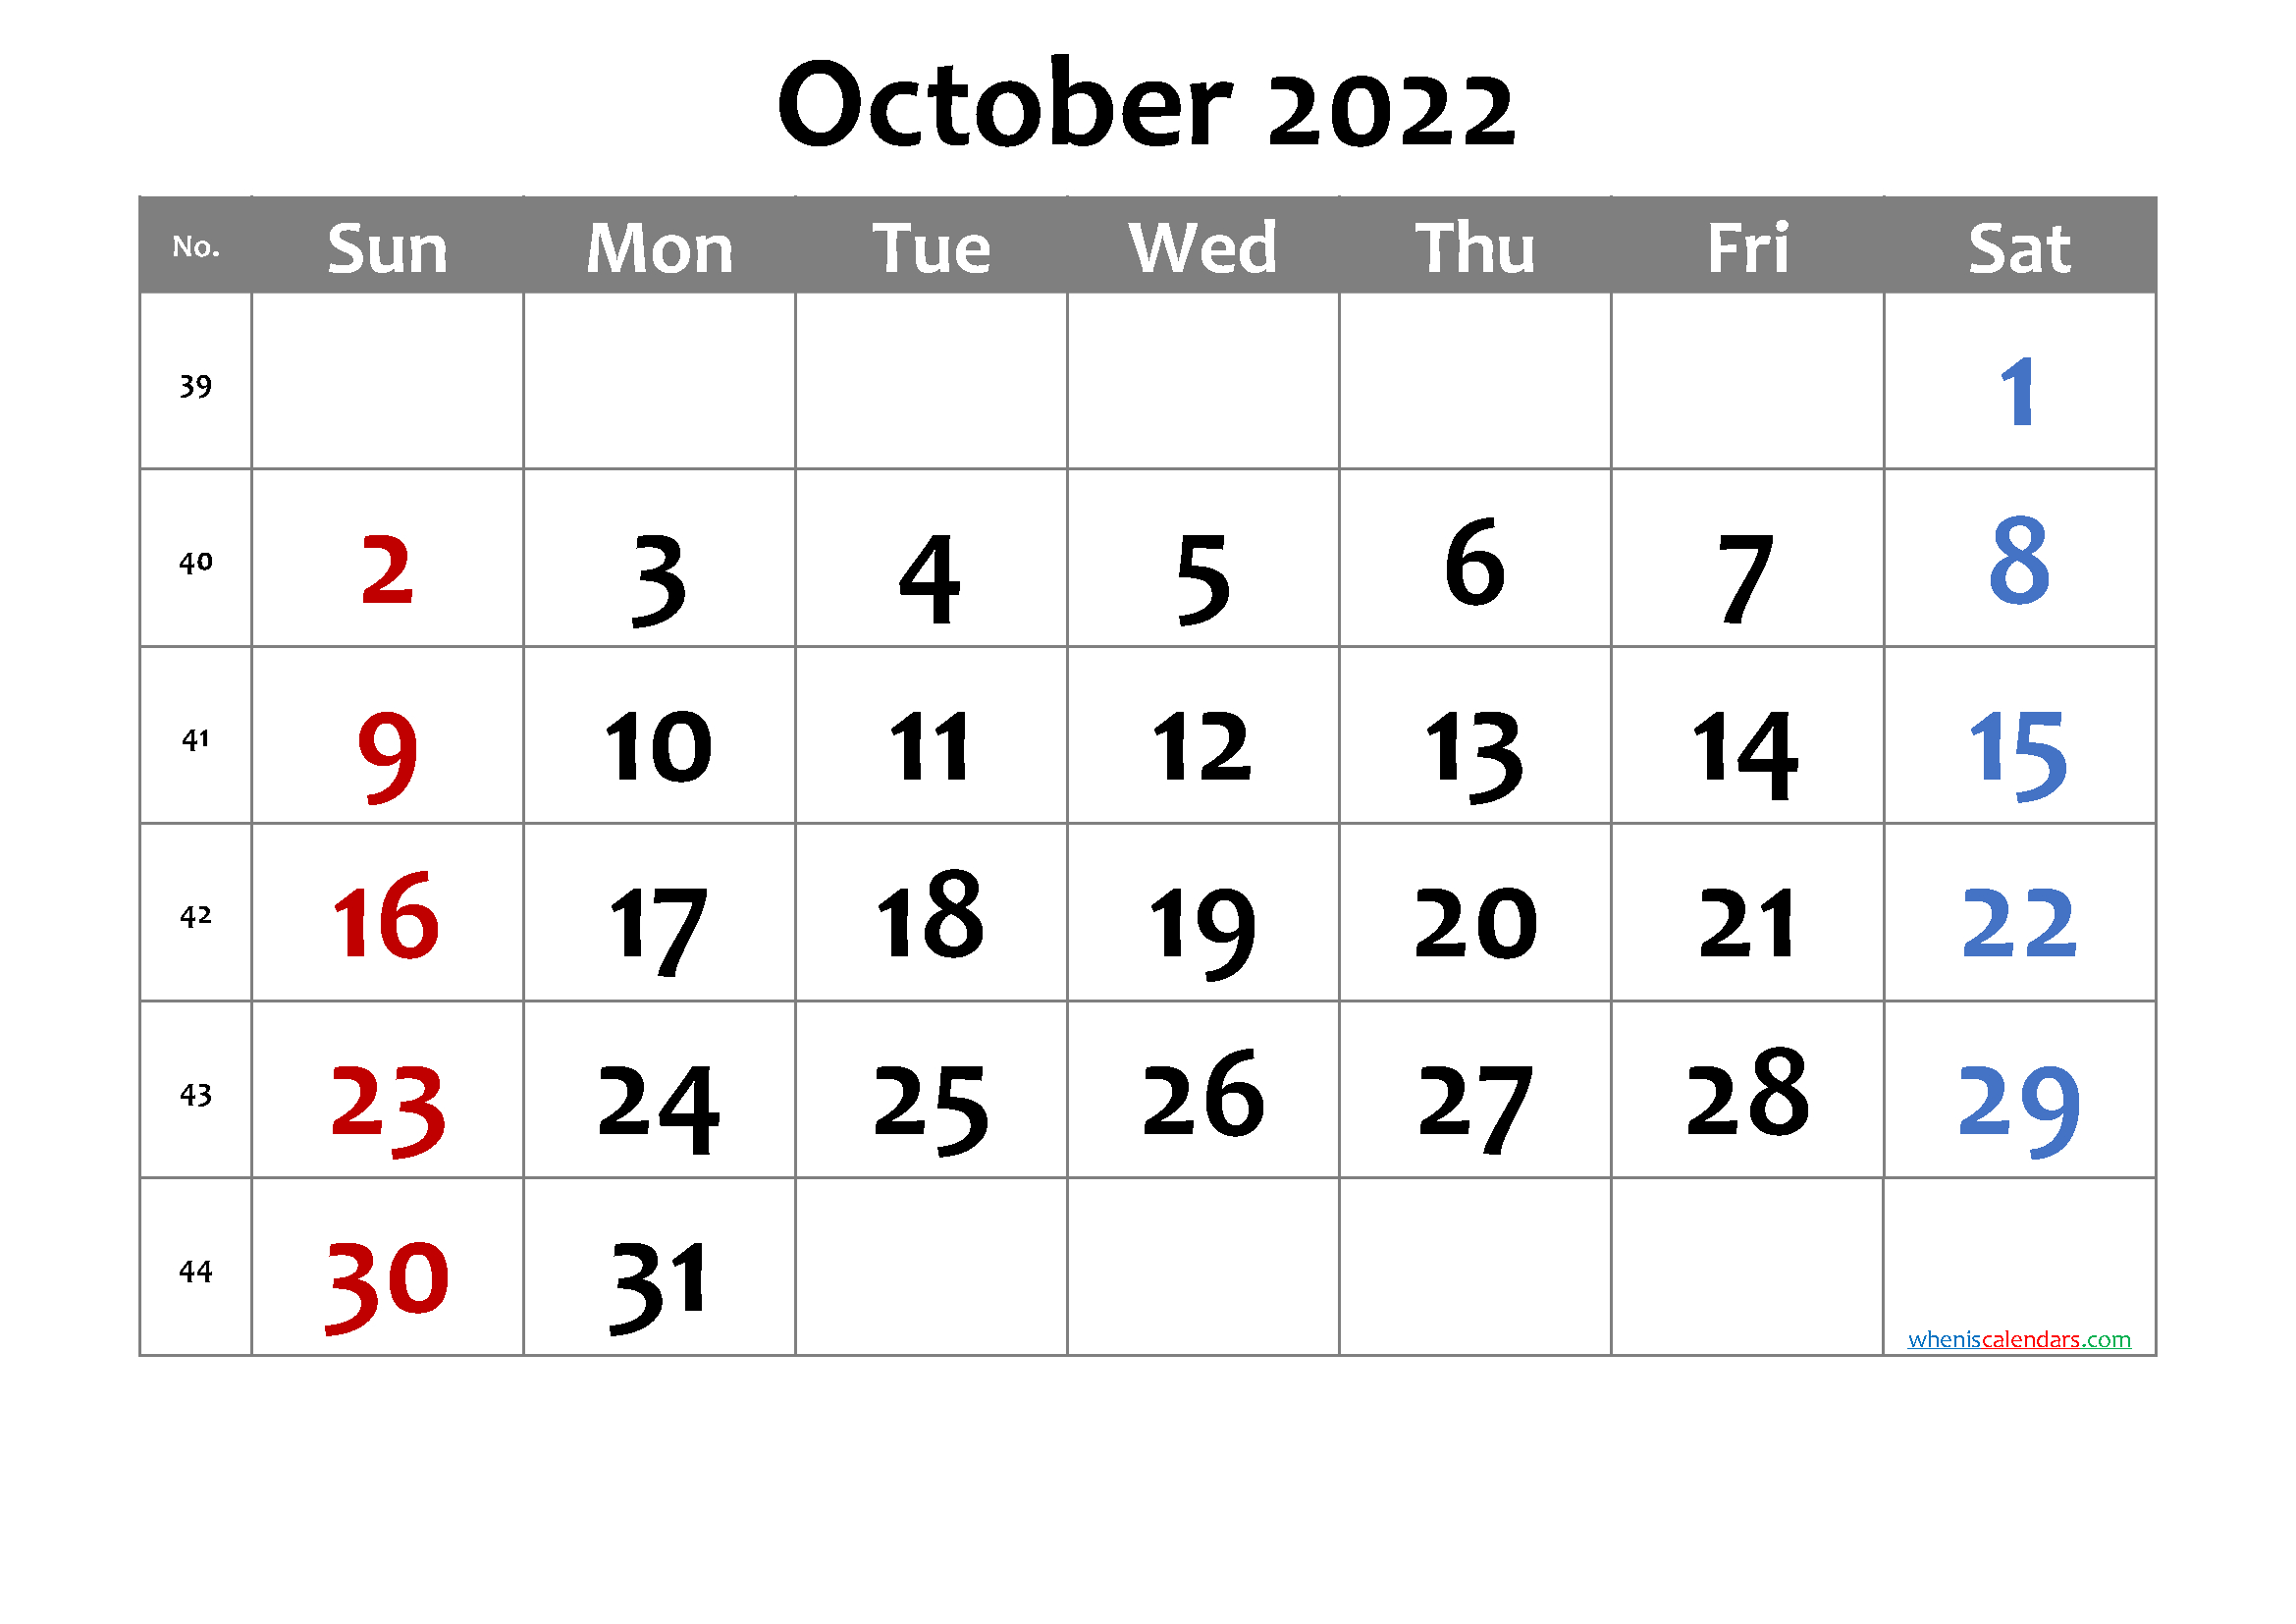 Free Printable October 2022 Calendar With Week Numbers